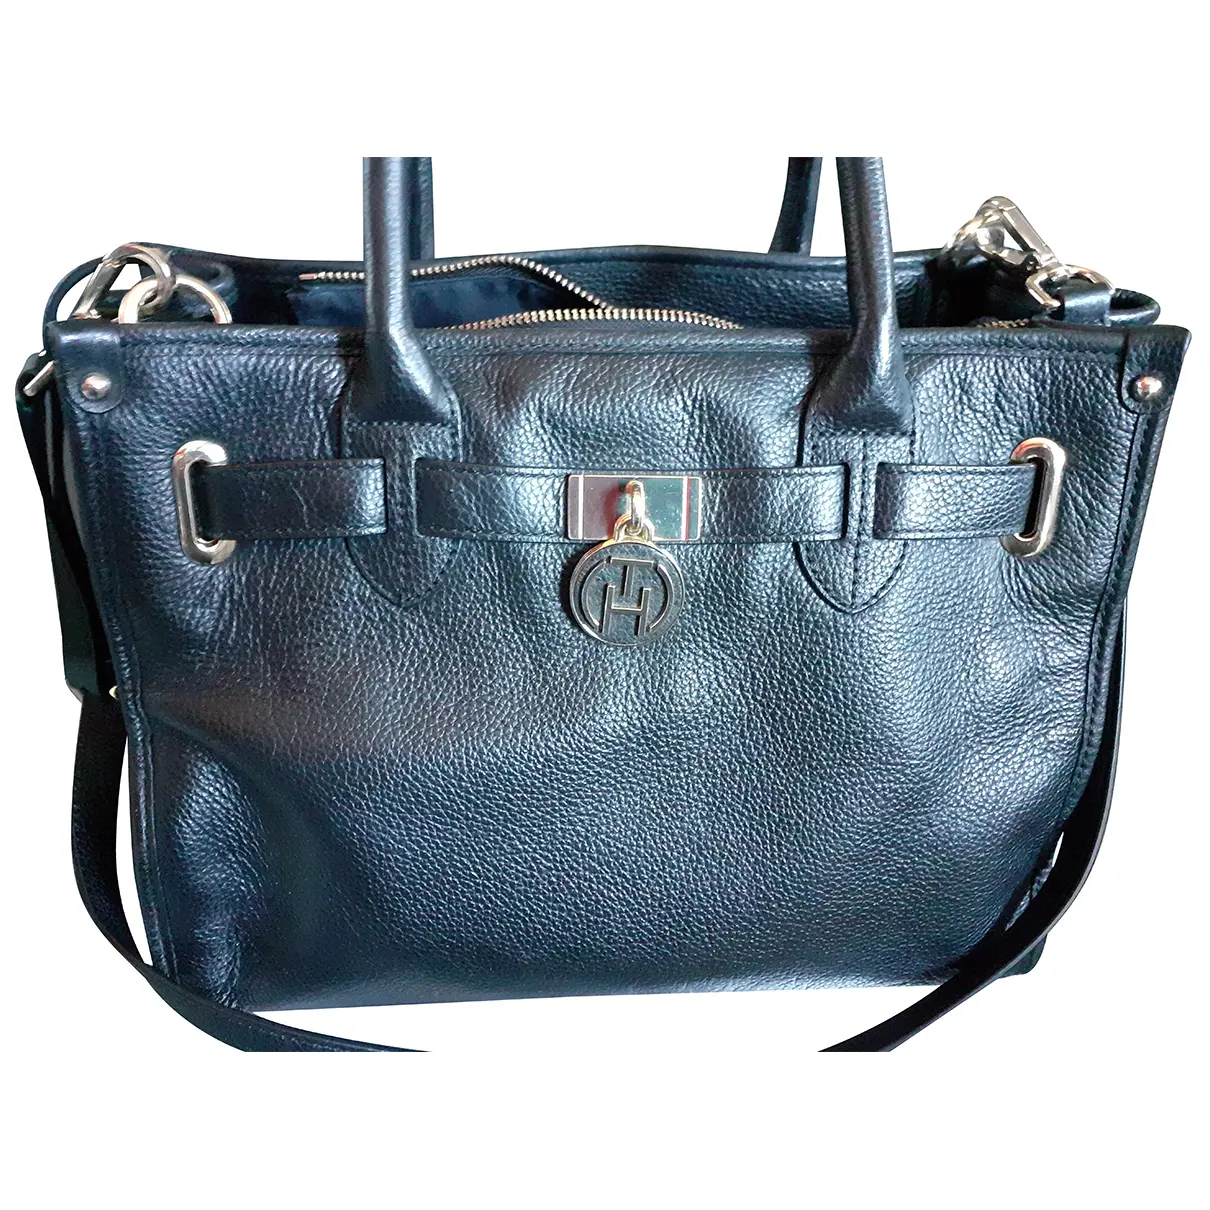 Leather handbag Tommy Hilfiger